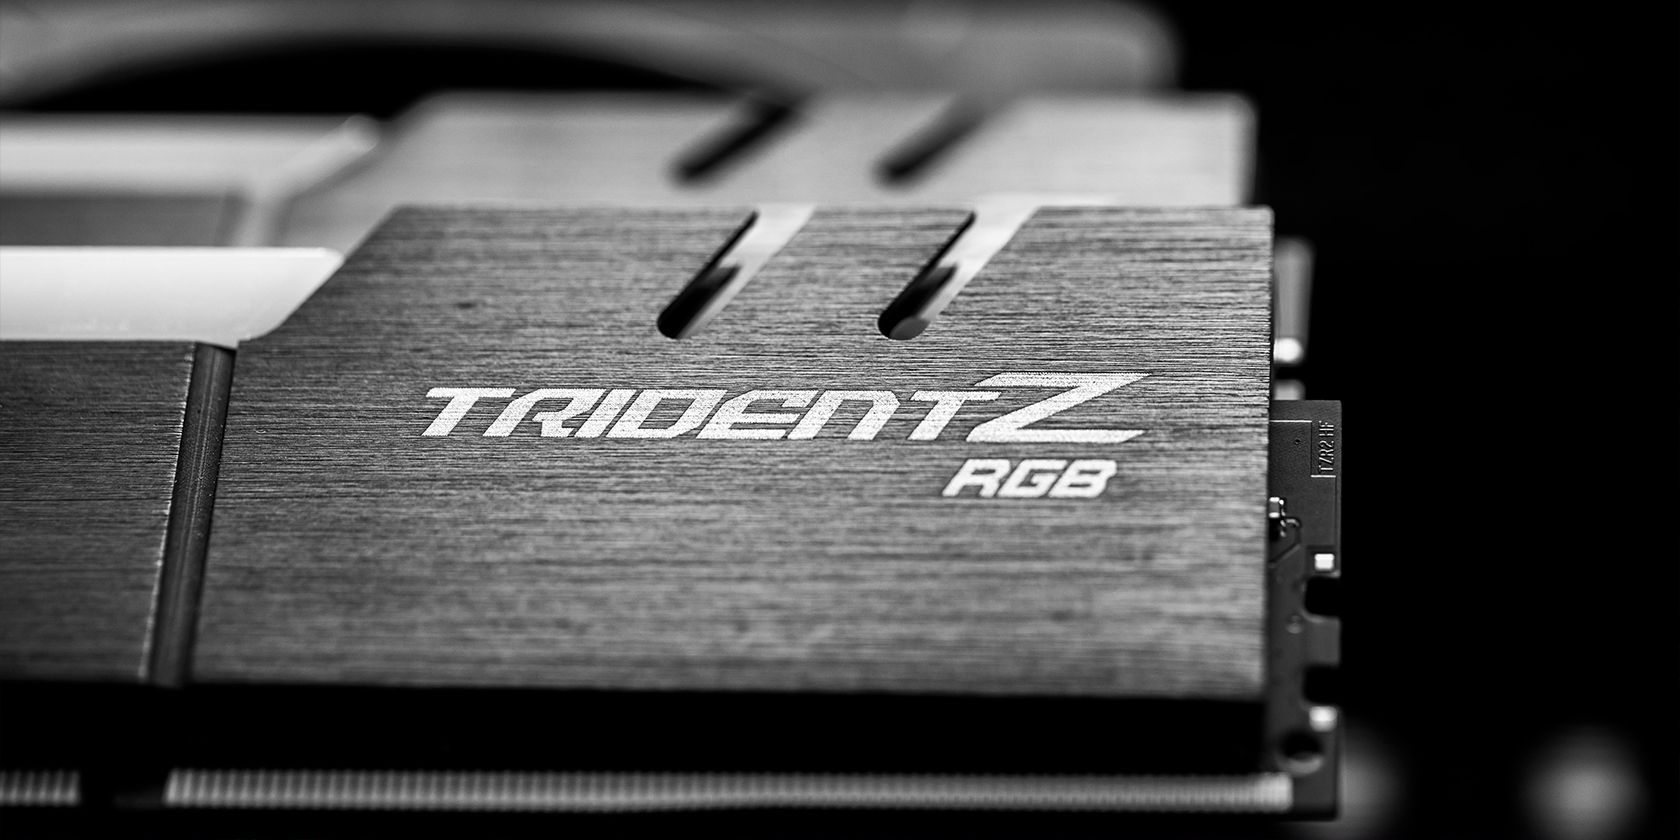 TridentZ RGB RAM sticks